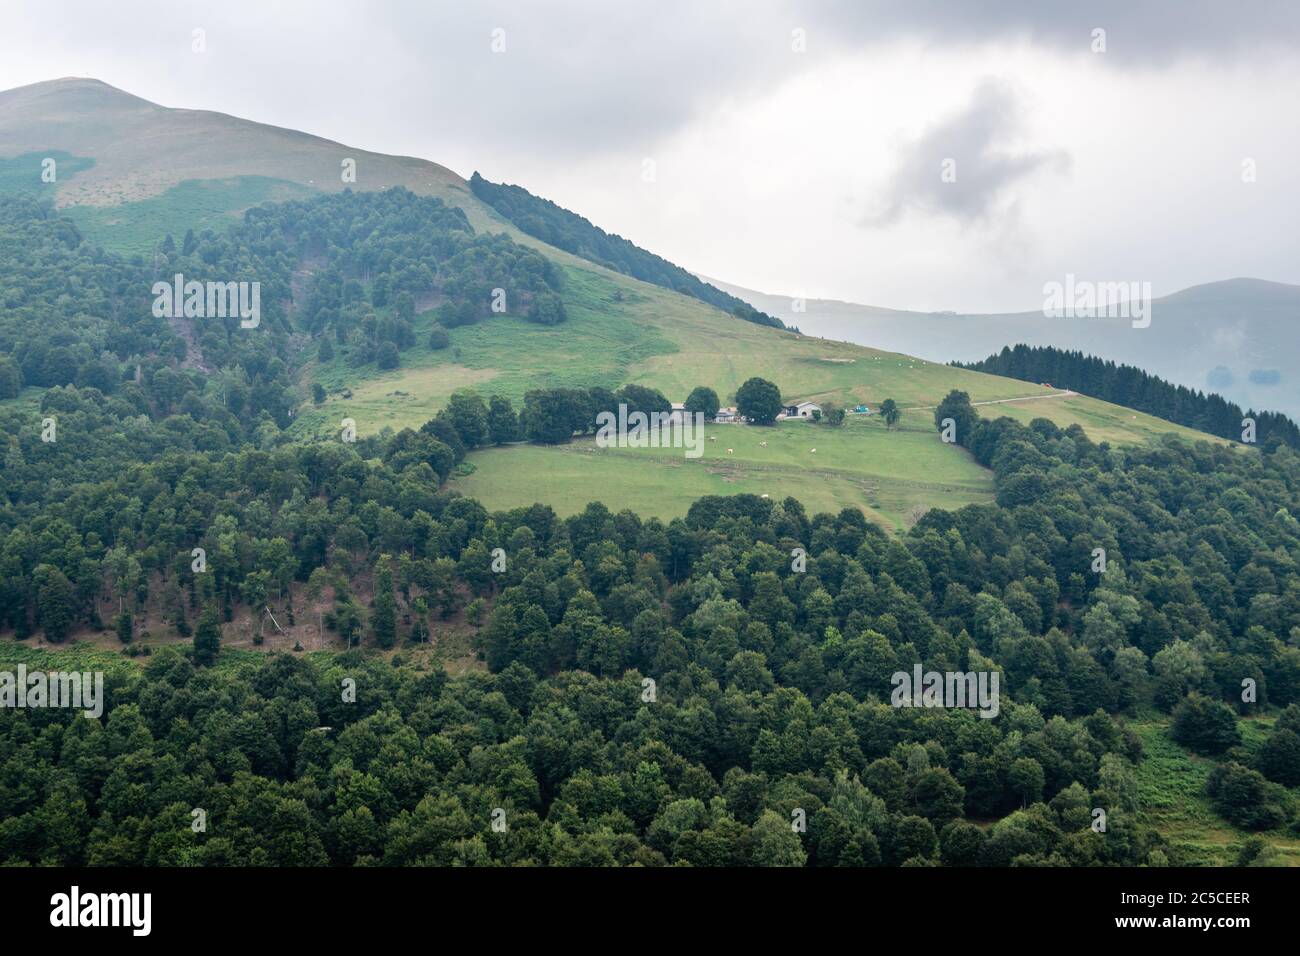 Ferme sur une colline verdoyante entourée de pâturages et de forêts de feuillus, paysages de montagne de Lombardie, Italie. Banque D'Images